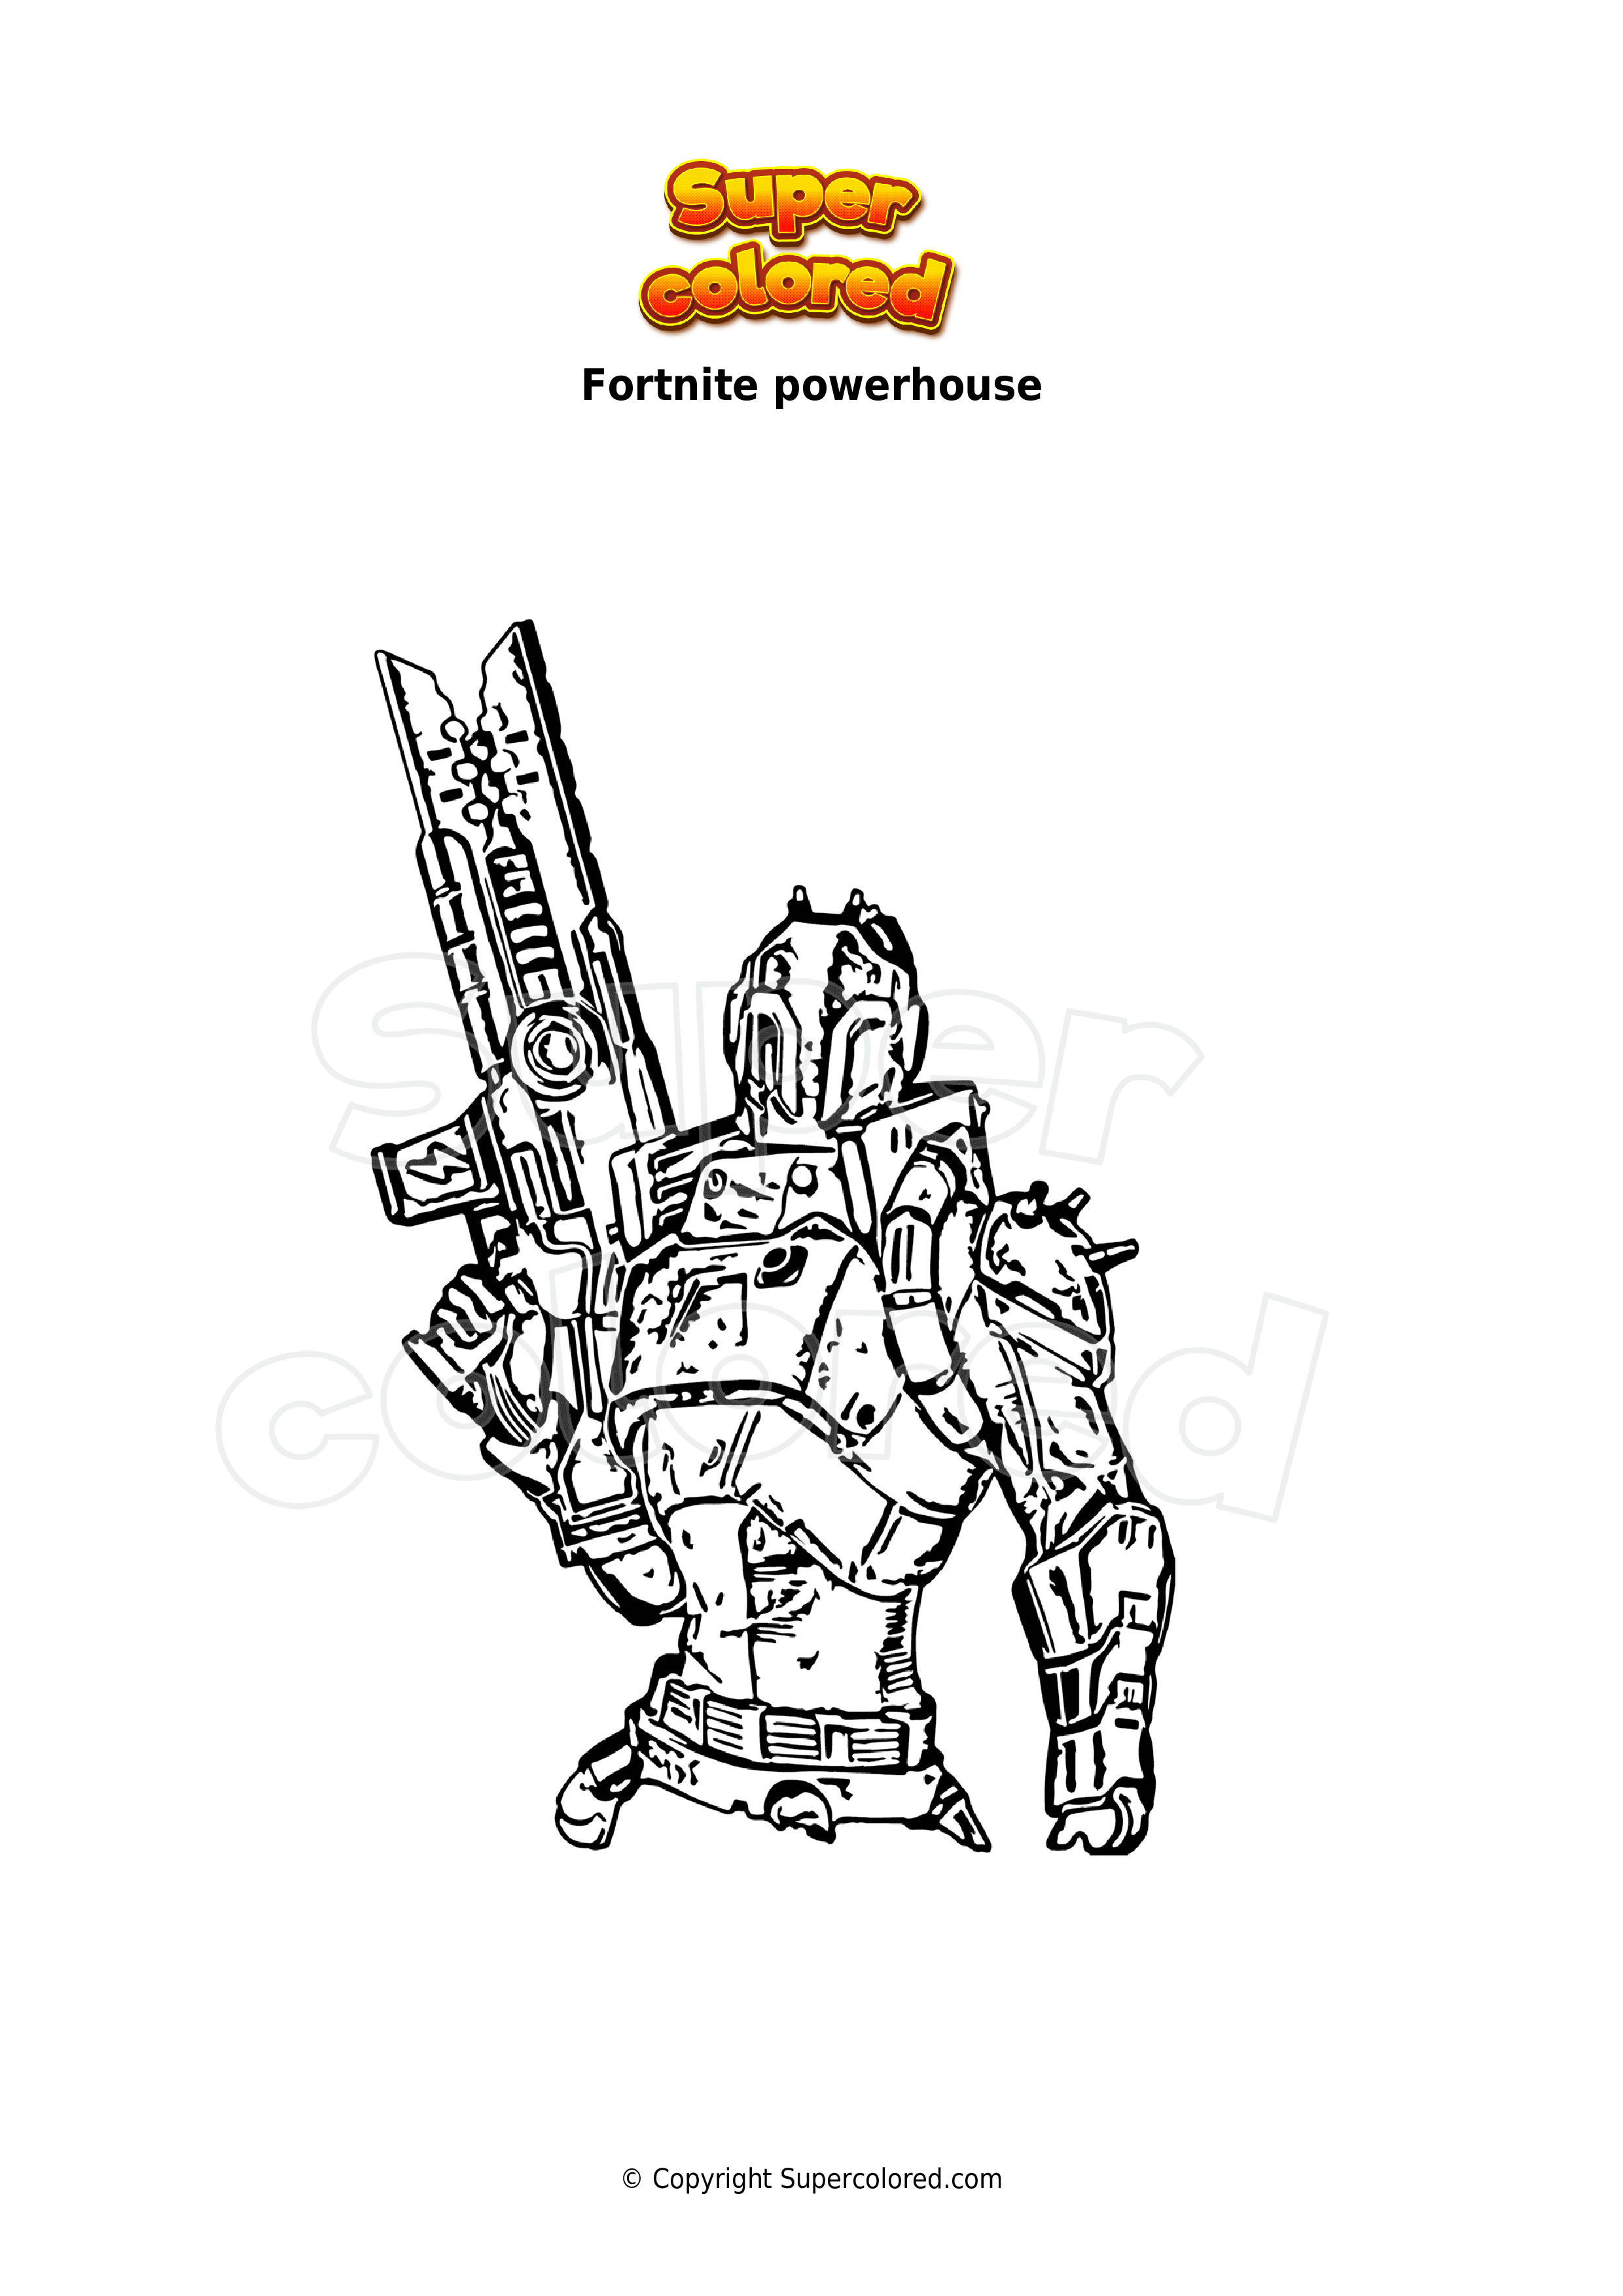 Dibujo para colorear Fortnite powerhouse - Supercolored.com